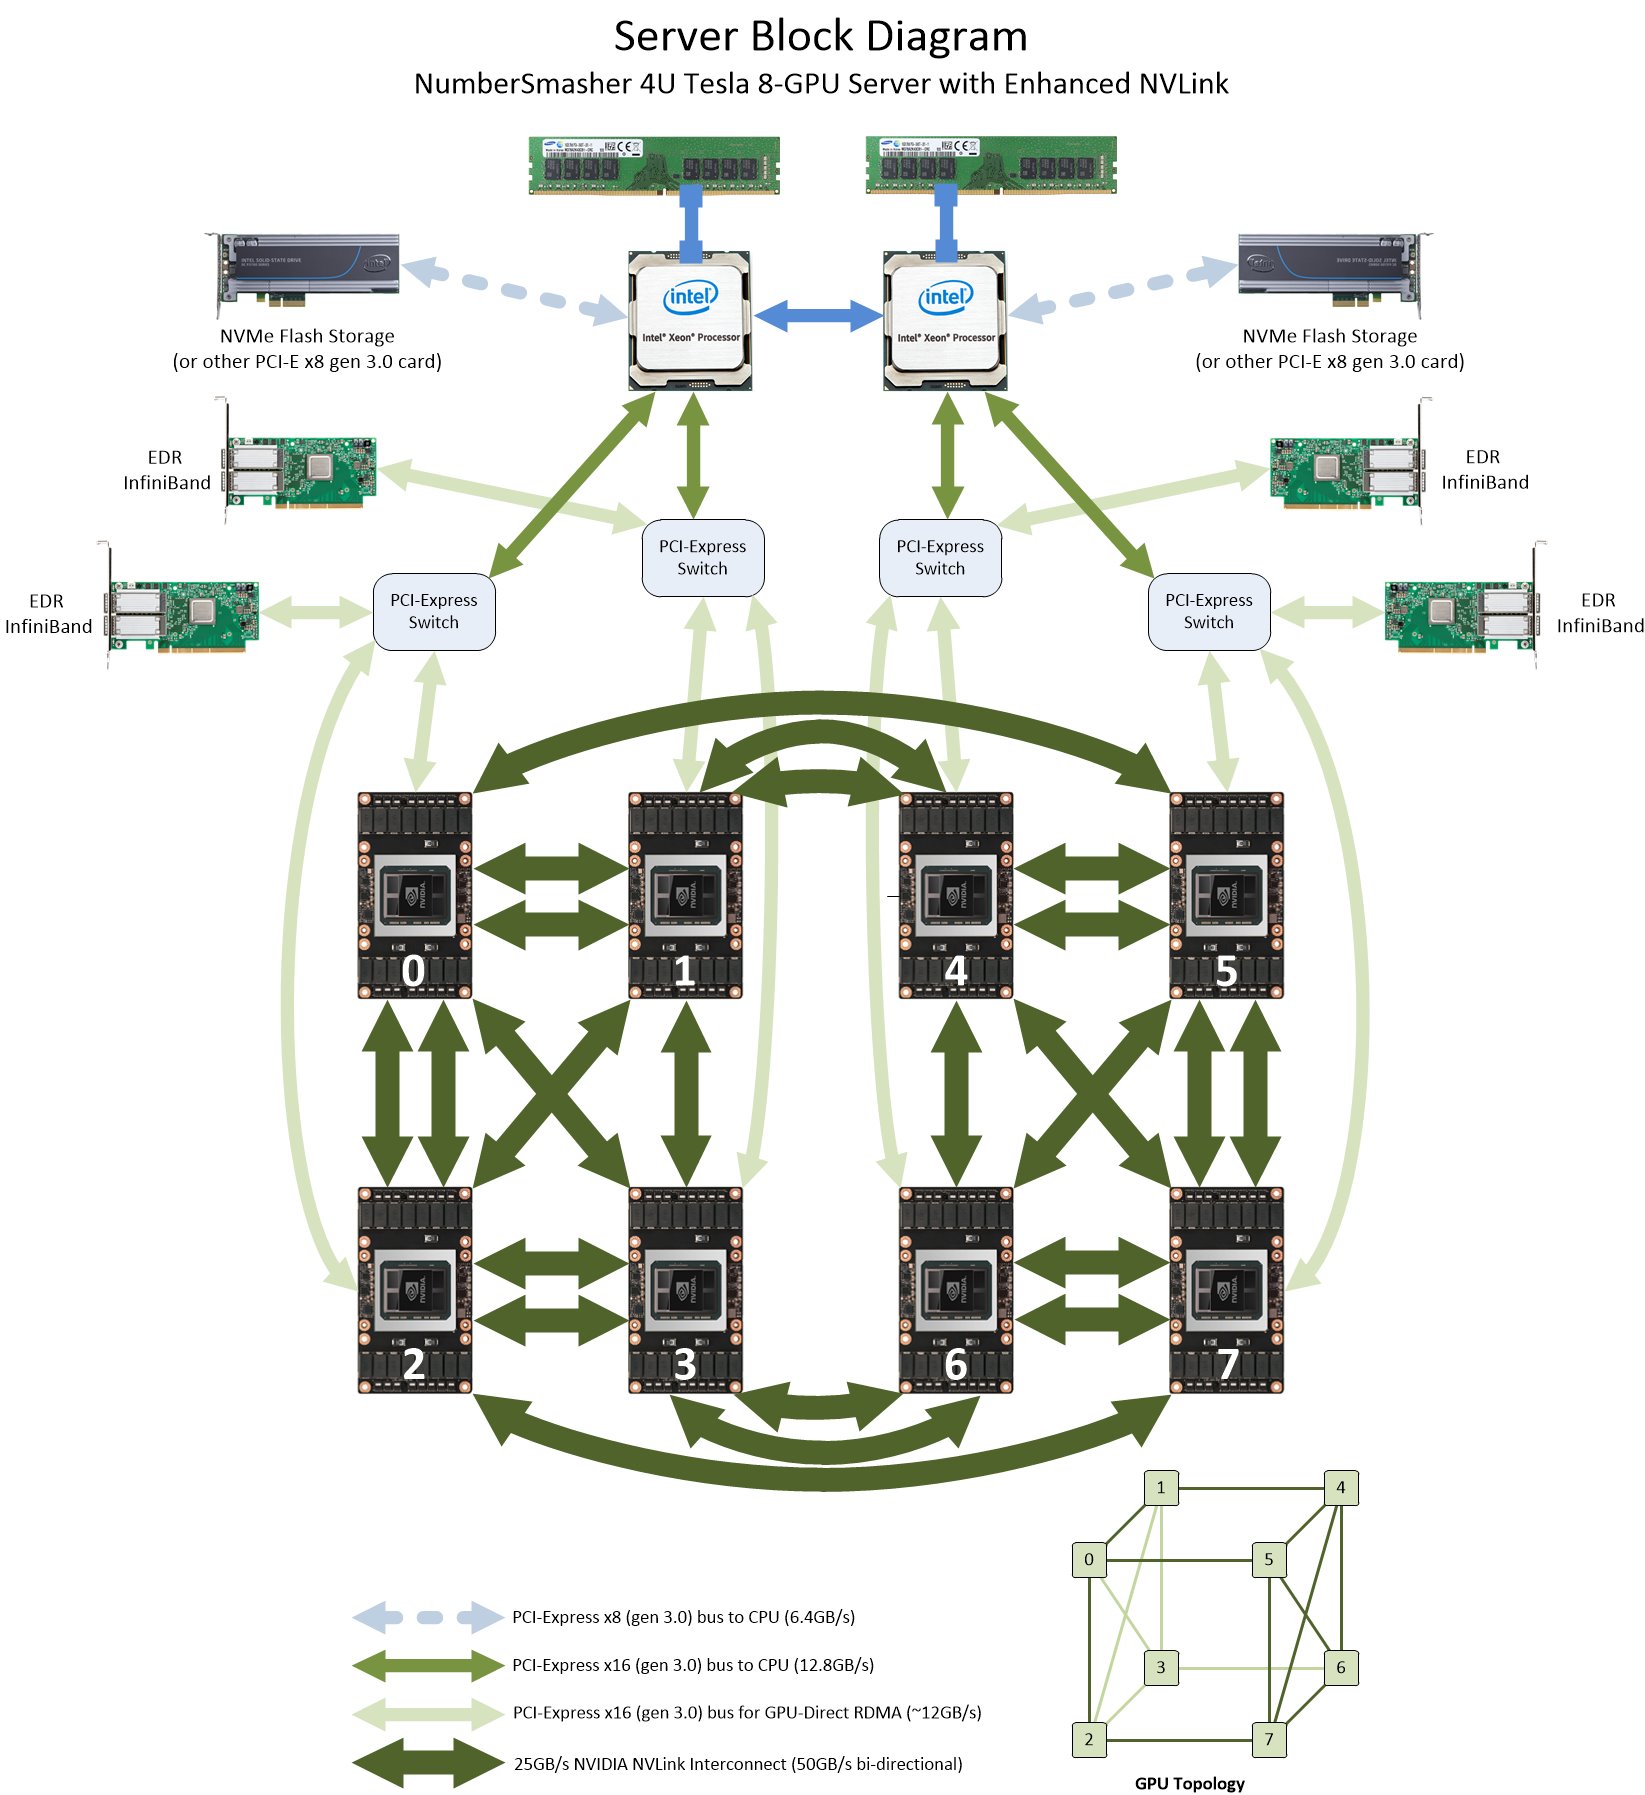 高性能计算硬件设计拓扑图：单台机器共有8张英伟达显卡，每张显卡之间通过NVLink互联，显卡和Intel CPU之间使用PCI-E总线相连，多台机器之间通过InfiniBand高速互联网络互联。